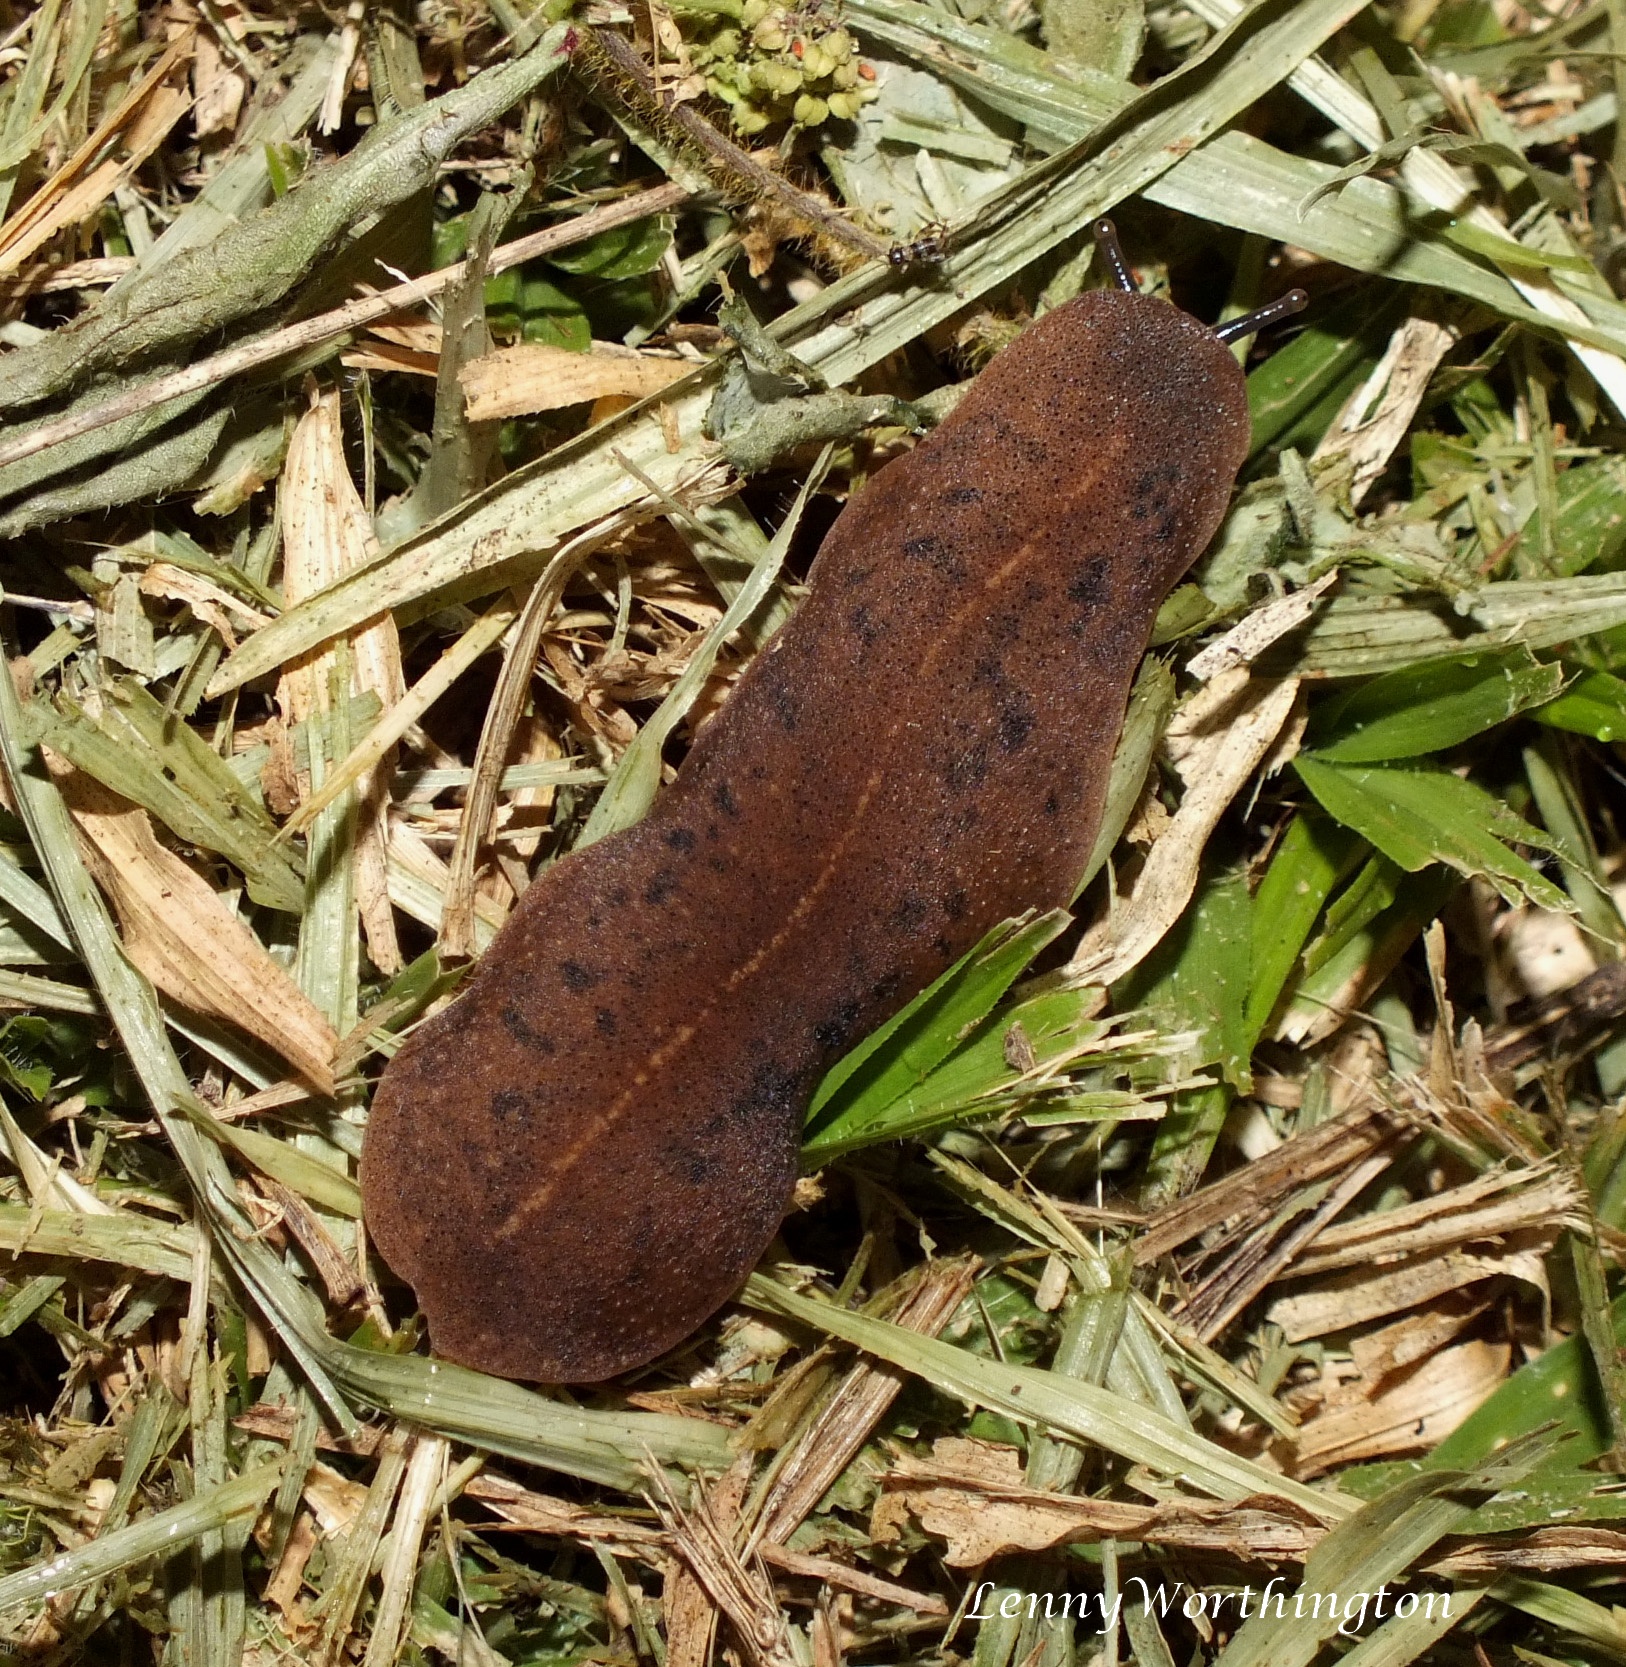 Adult tropical leatherleaf slug on grass.